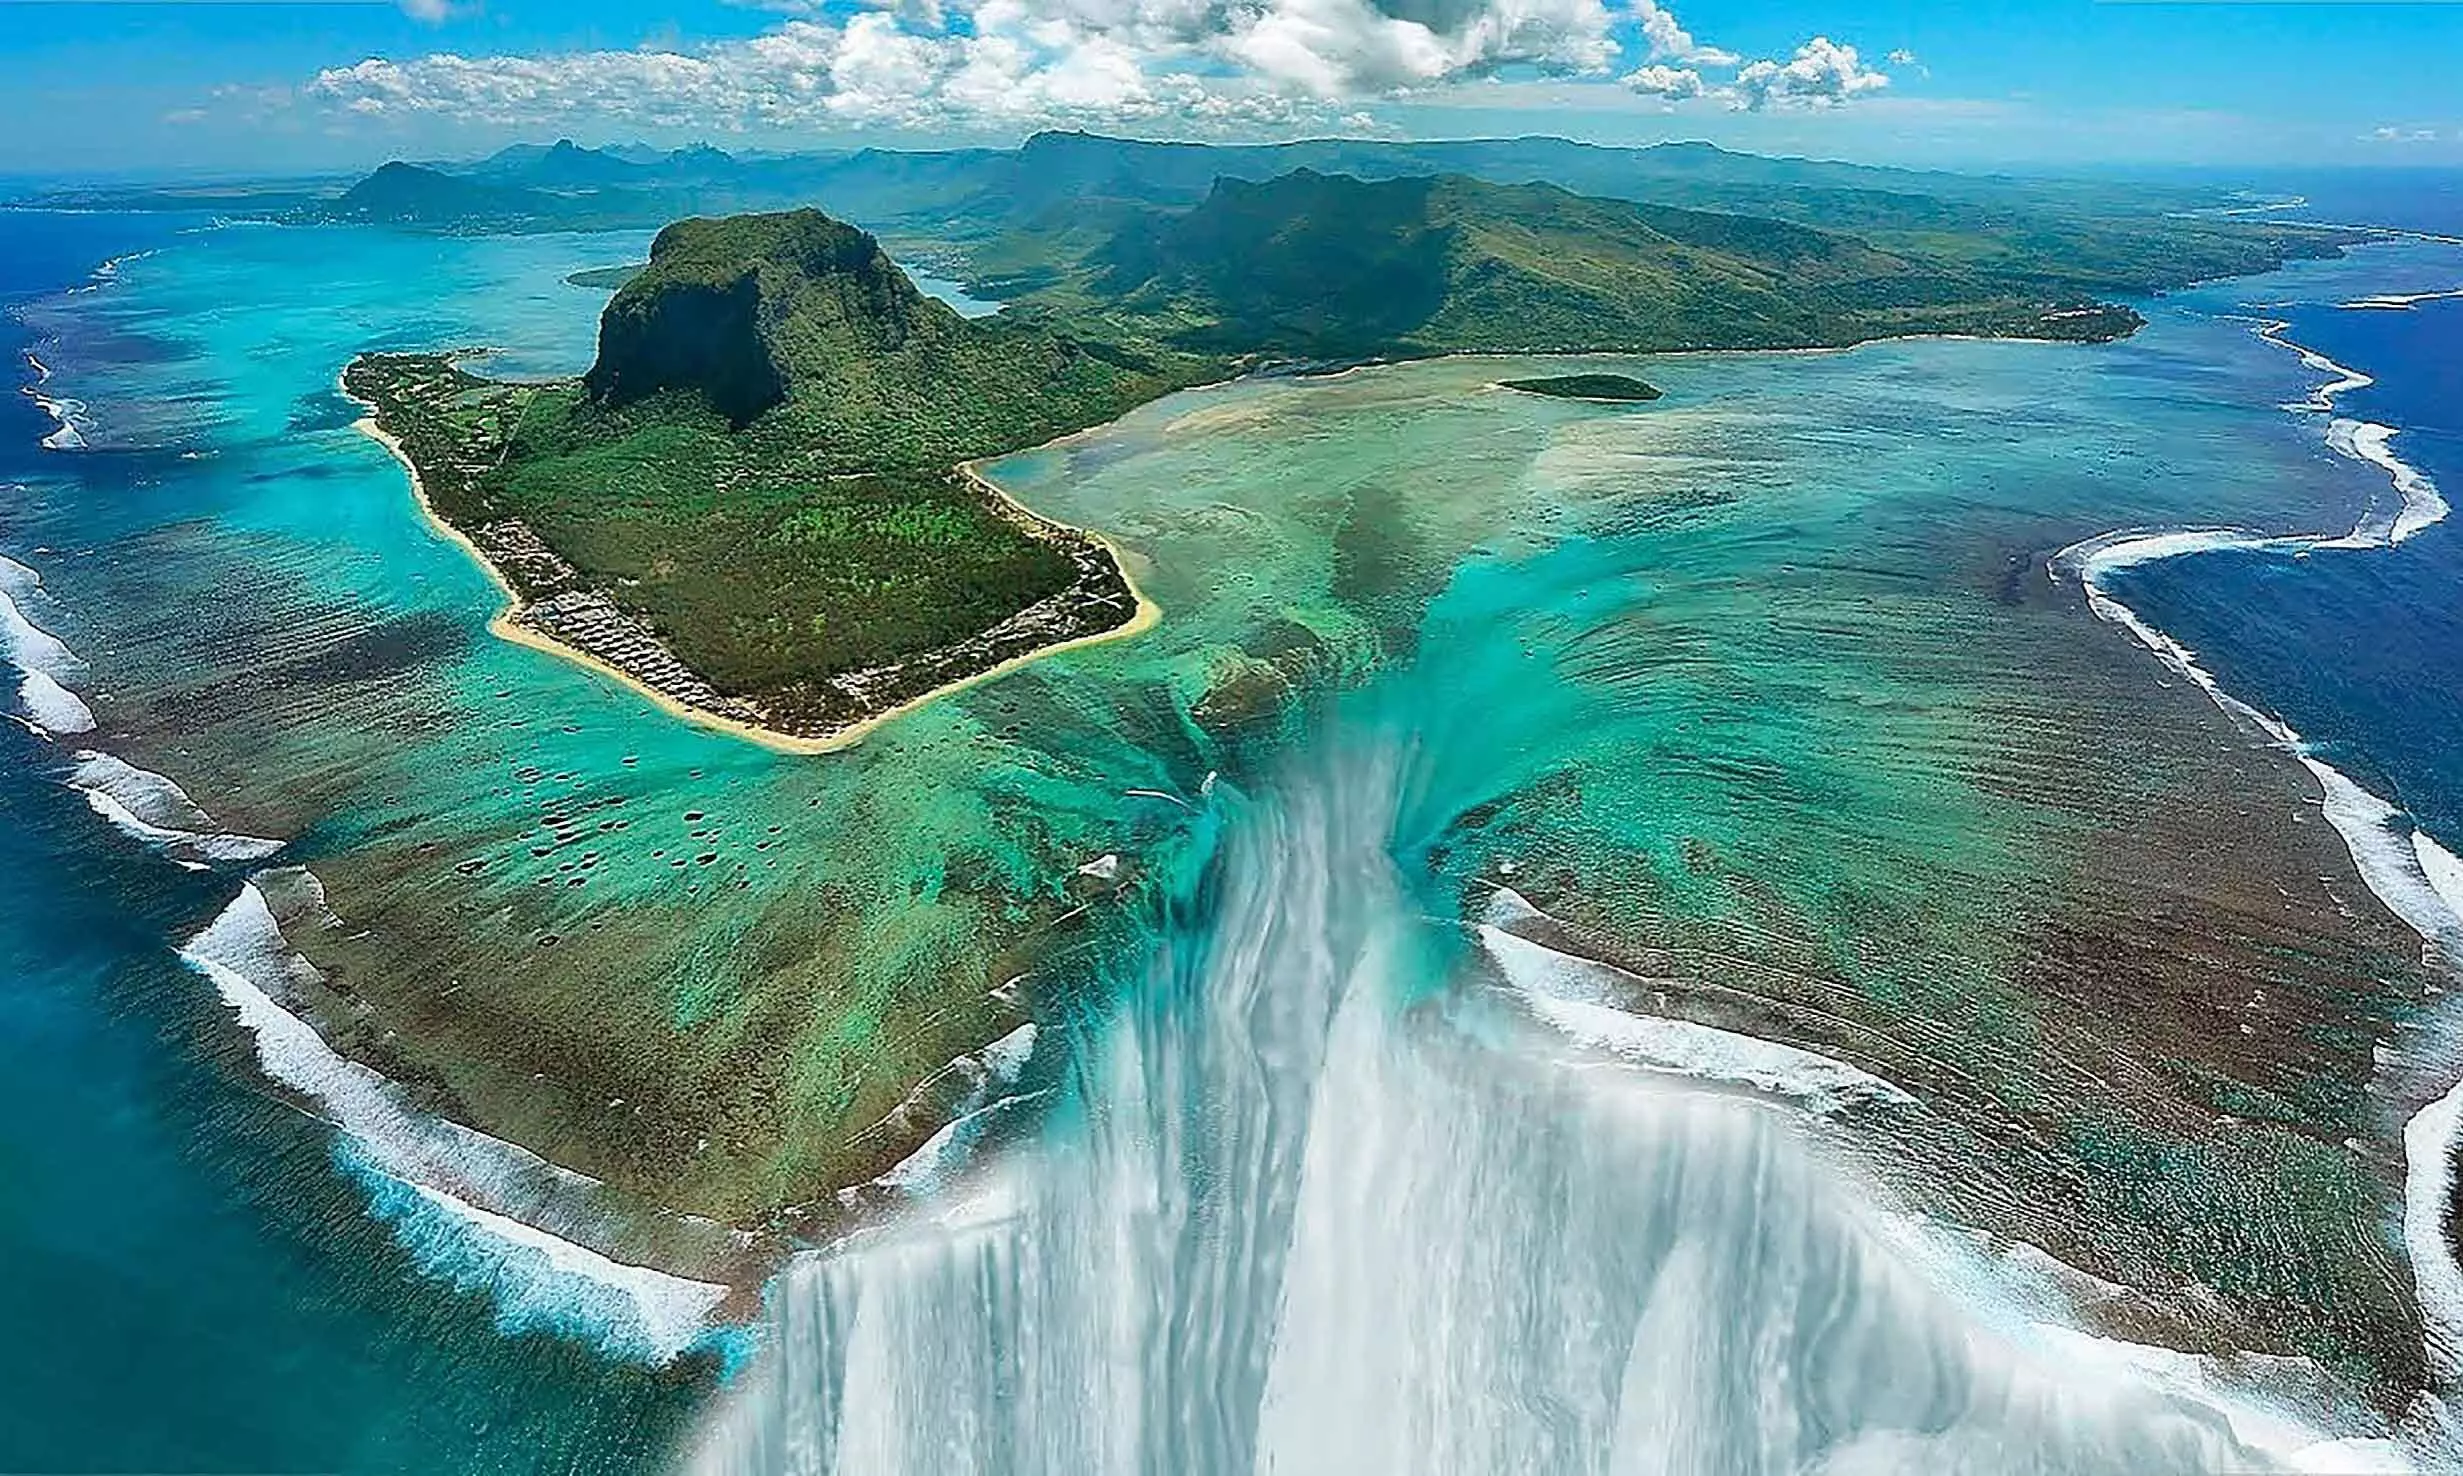 waterfall in the ocean